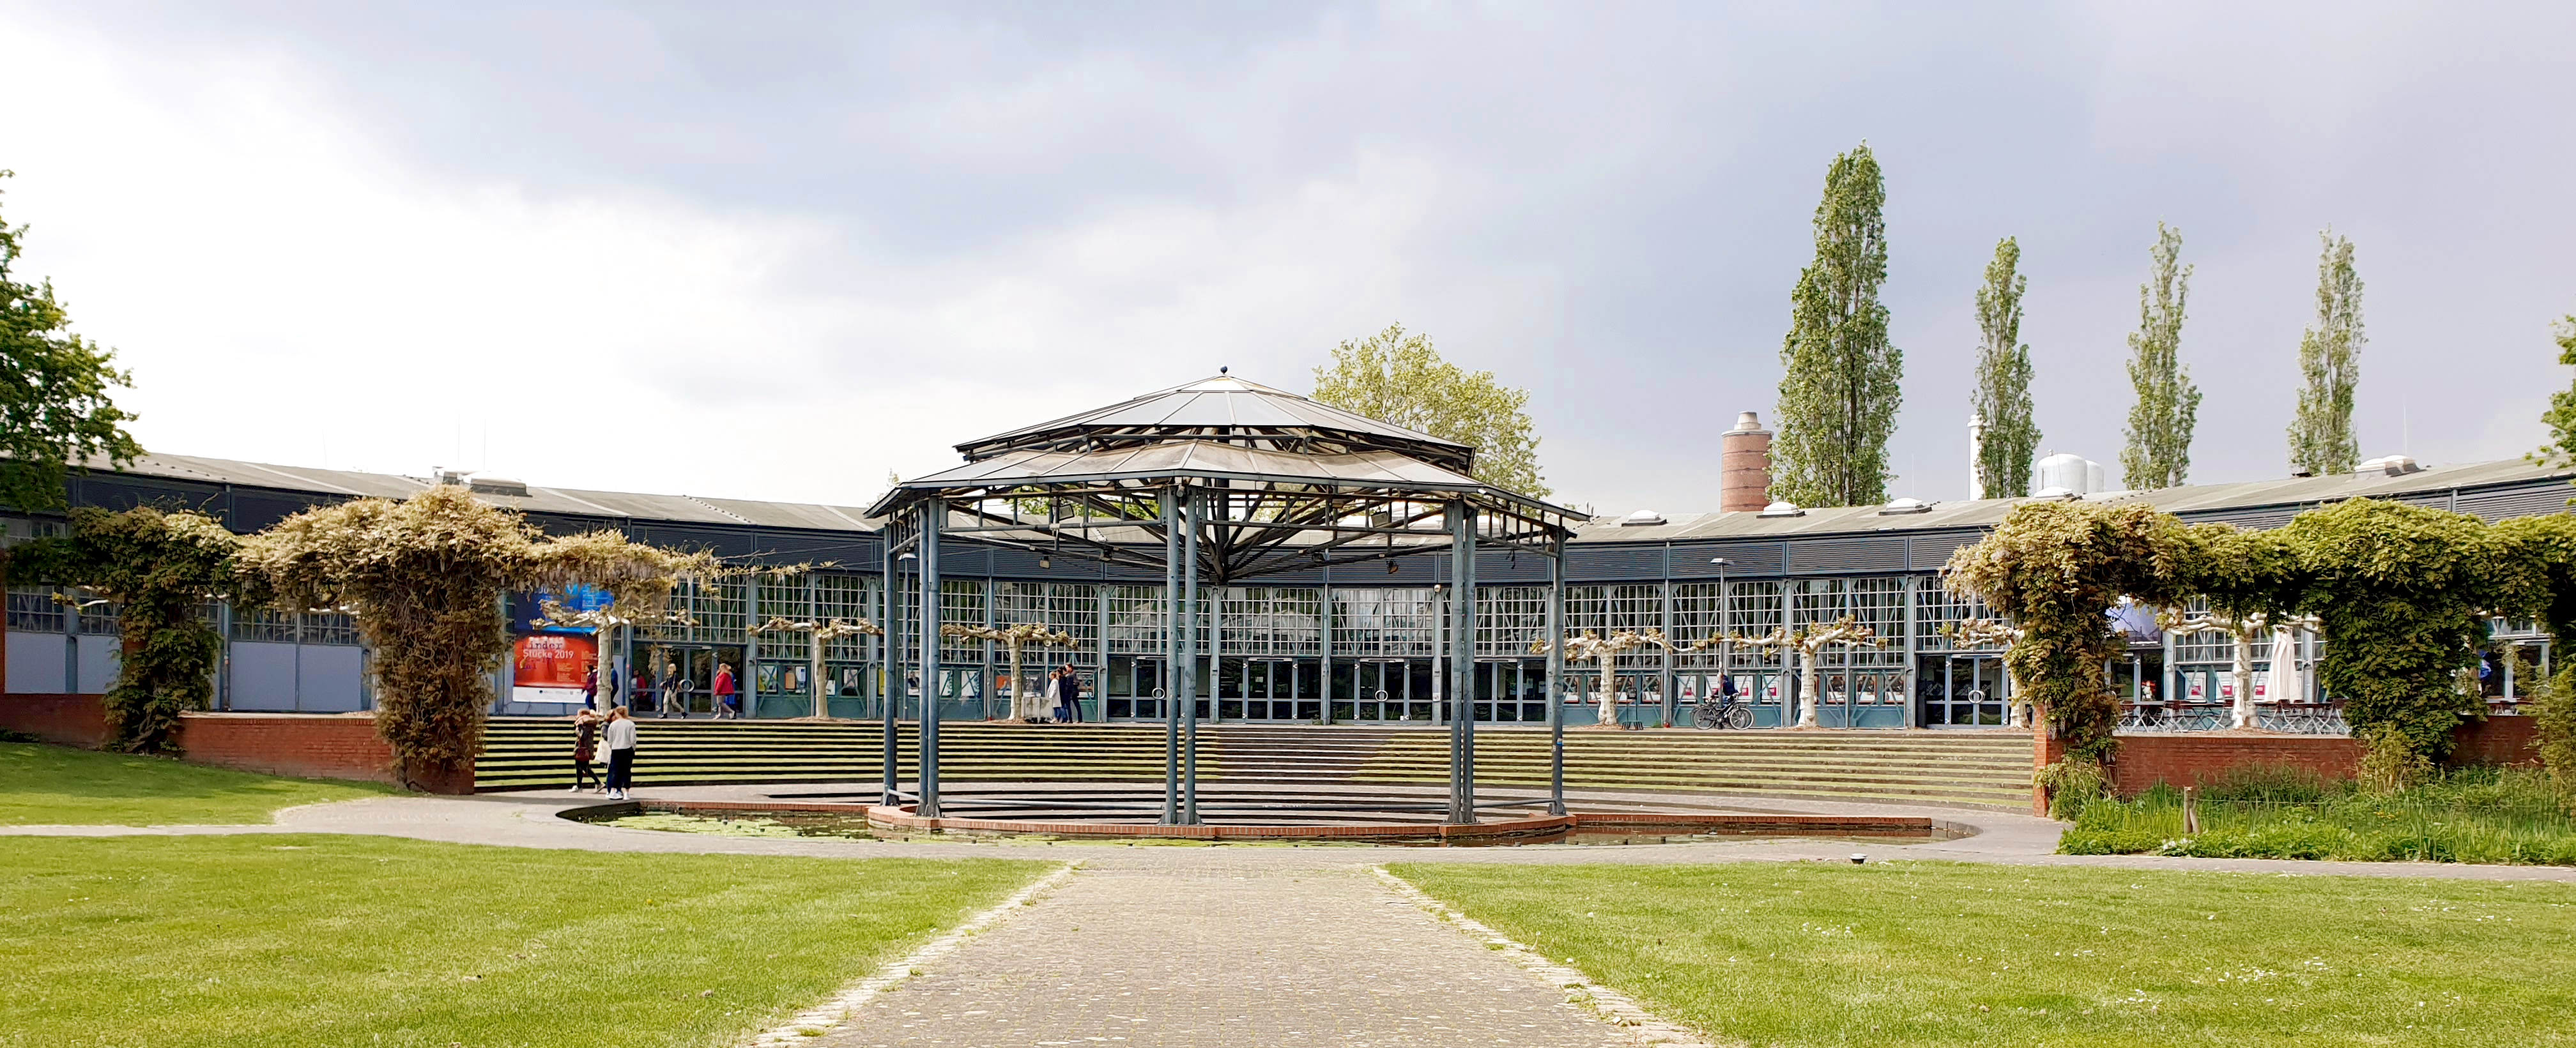 Das Bild zeigt den Ringlokschuppen in Mülheim